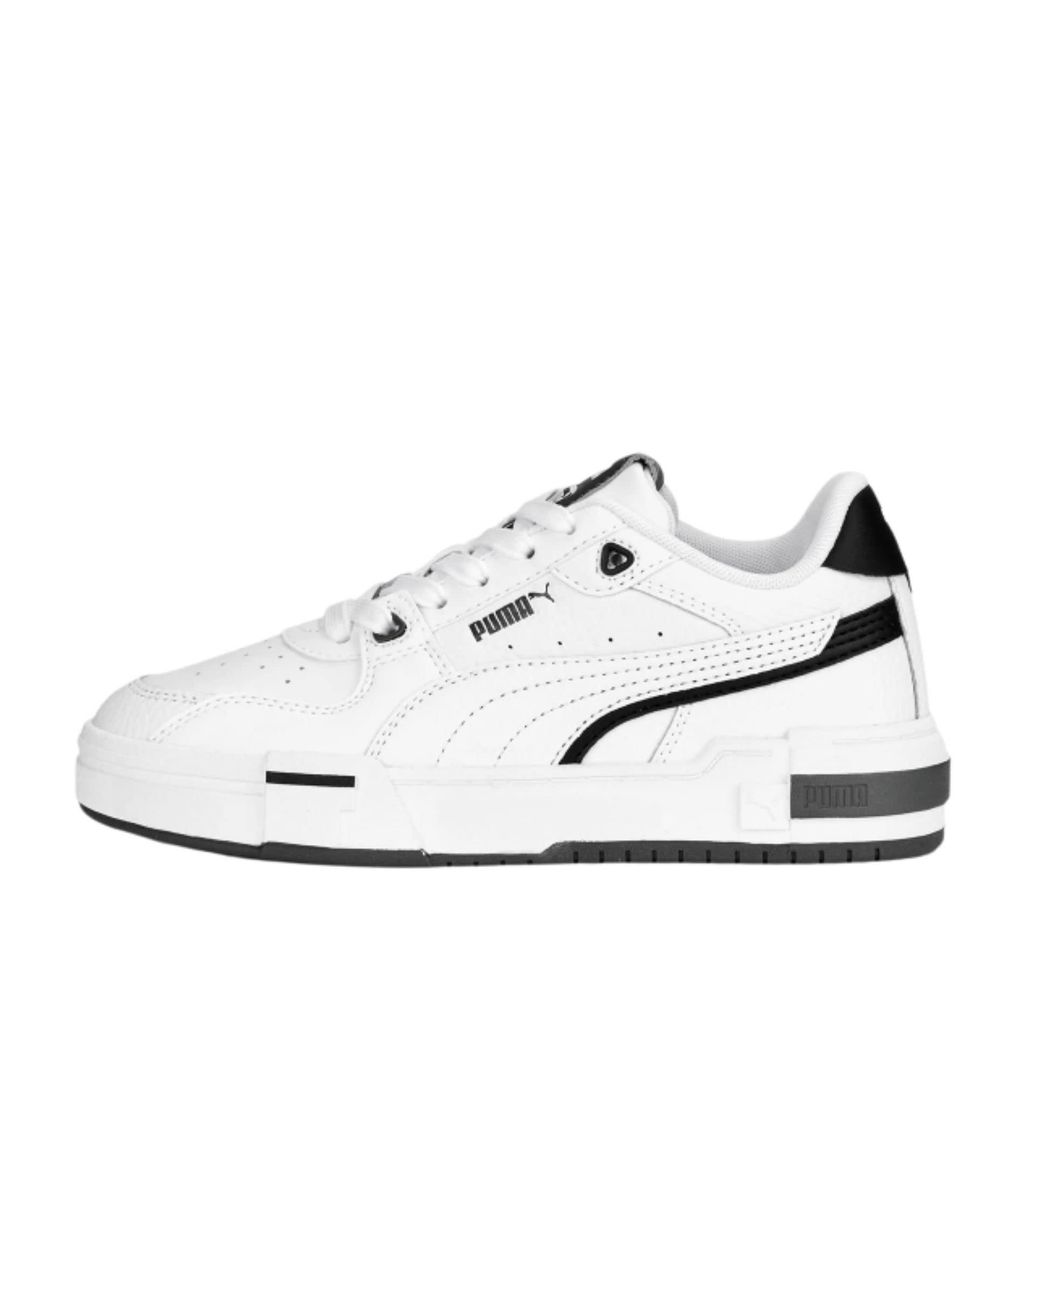 PUMA Shoes Sneaker Ca Pro Glitch Ith Leather White/balck/grey Zs23pu06  391512_02 in Black | Lyst UK